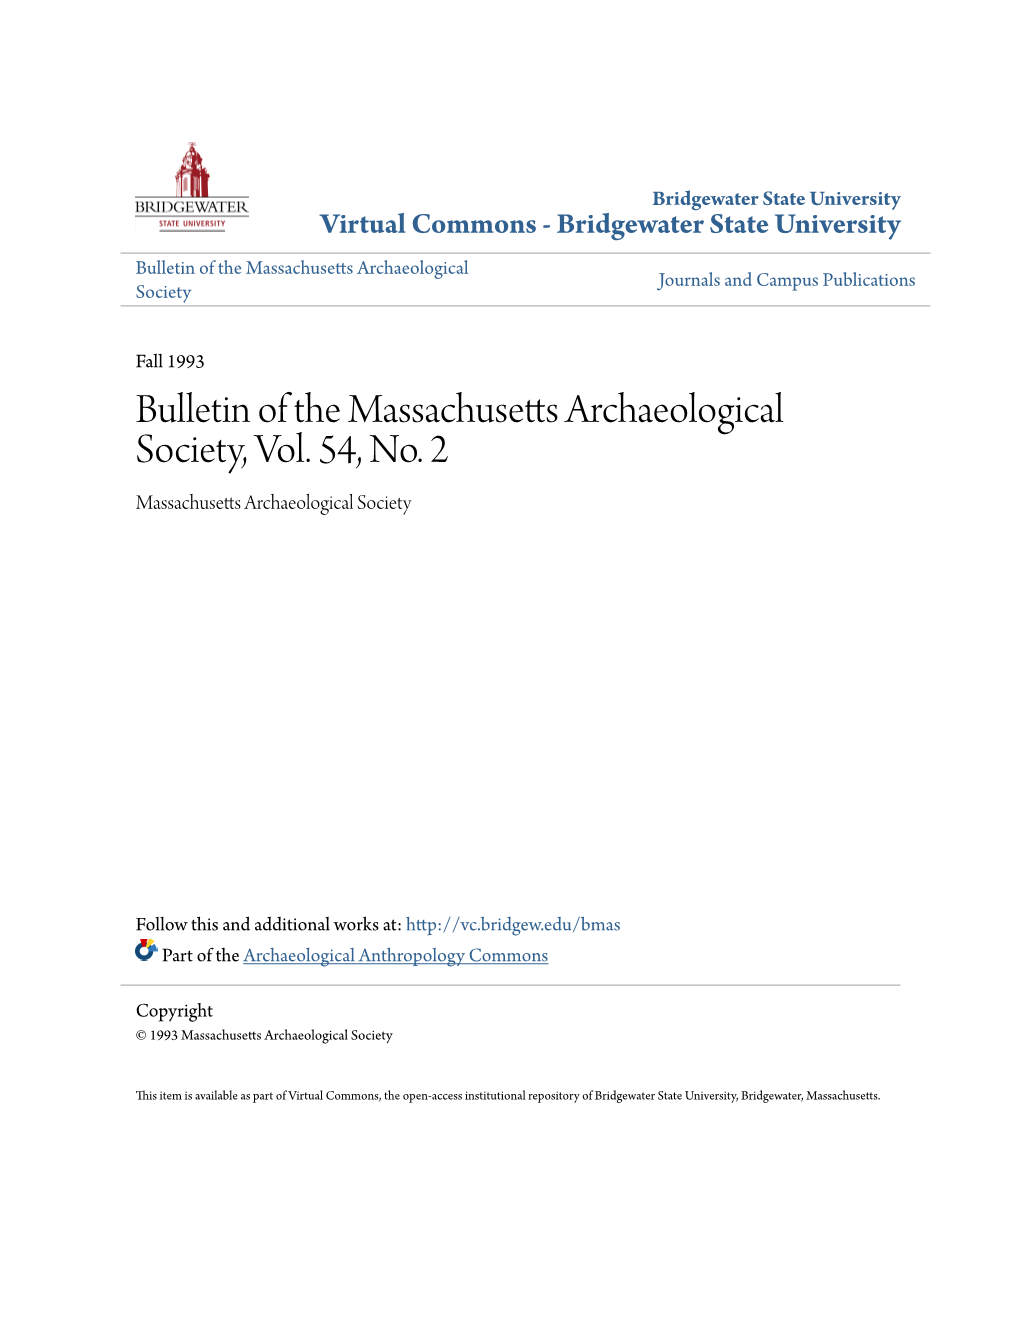 Bulletin of the Massachusetts Archaeological Society, Vol. 54, No. 2 Massachusetts Archaeological Society